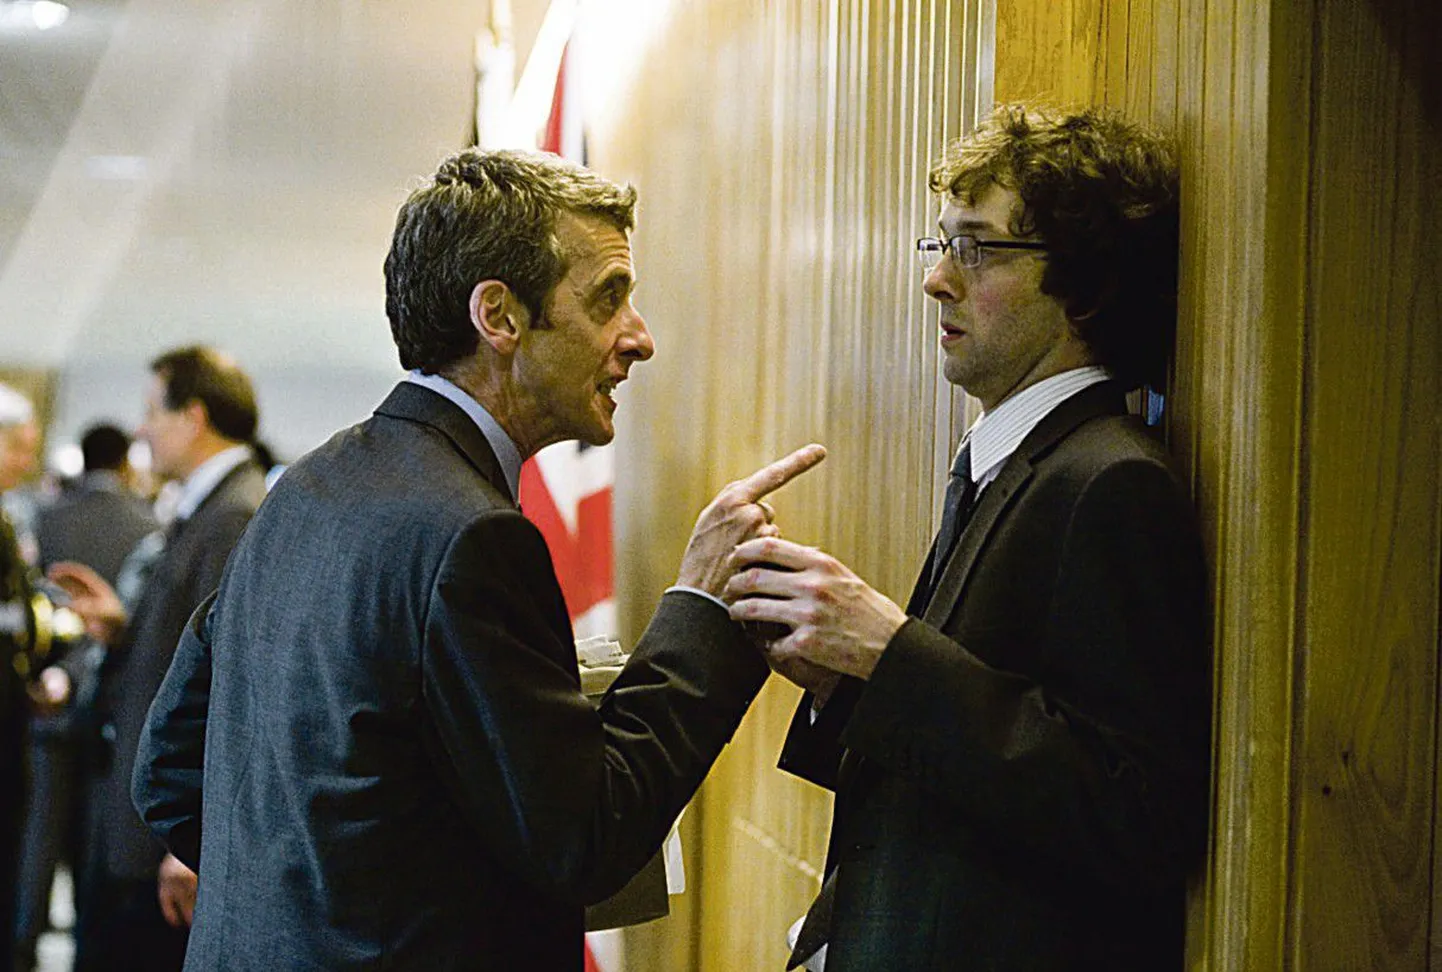 Глава пресс-центра Малькольм Таккер (Питер Капальди) распекает неопытного чиновника Тоби Райта (Крис Аддисон).